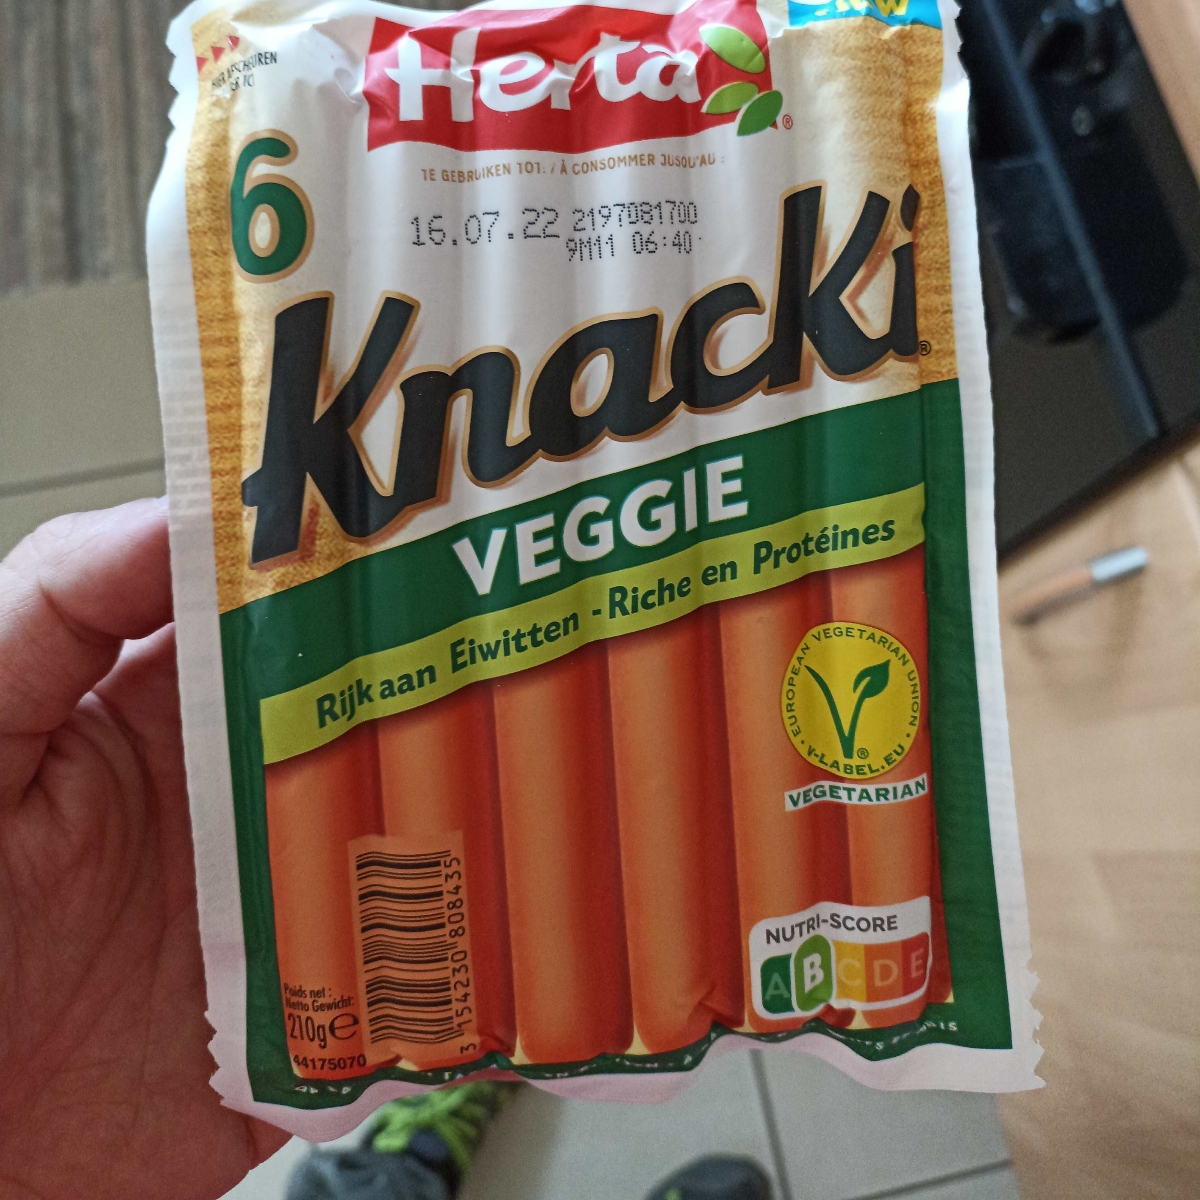 Herta Knacki Veggie Reviews